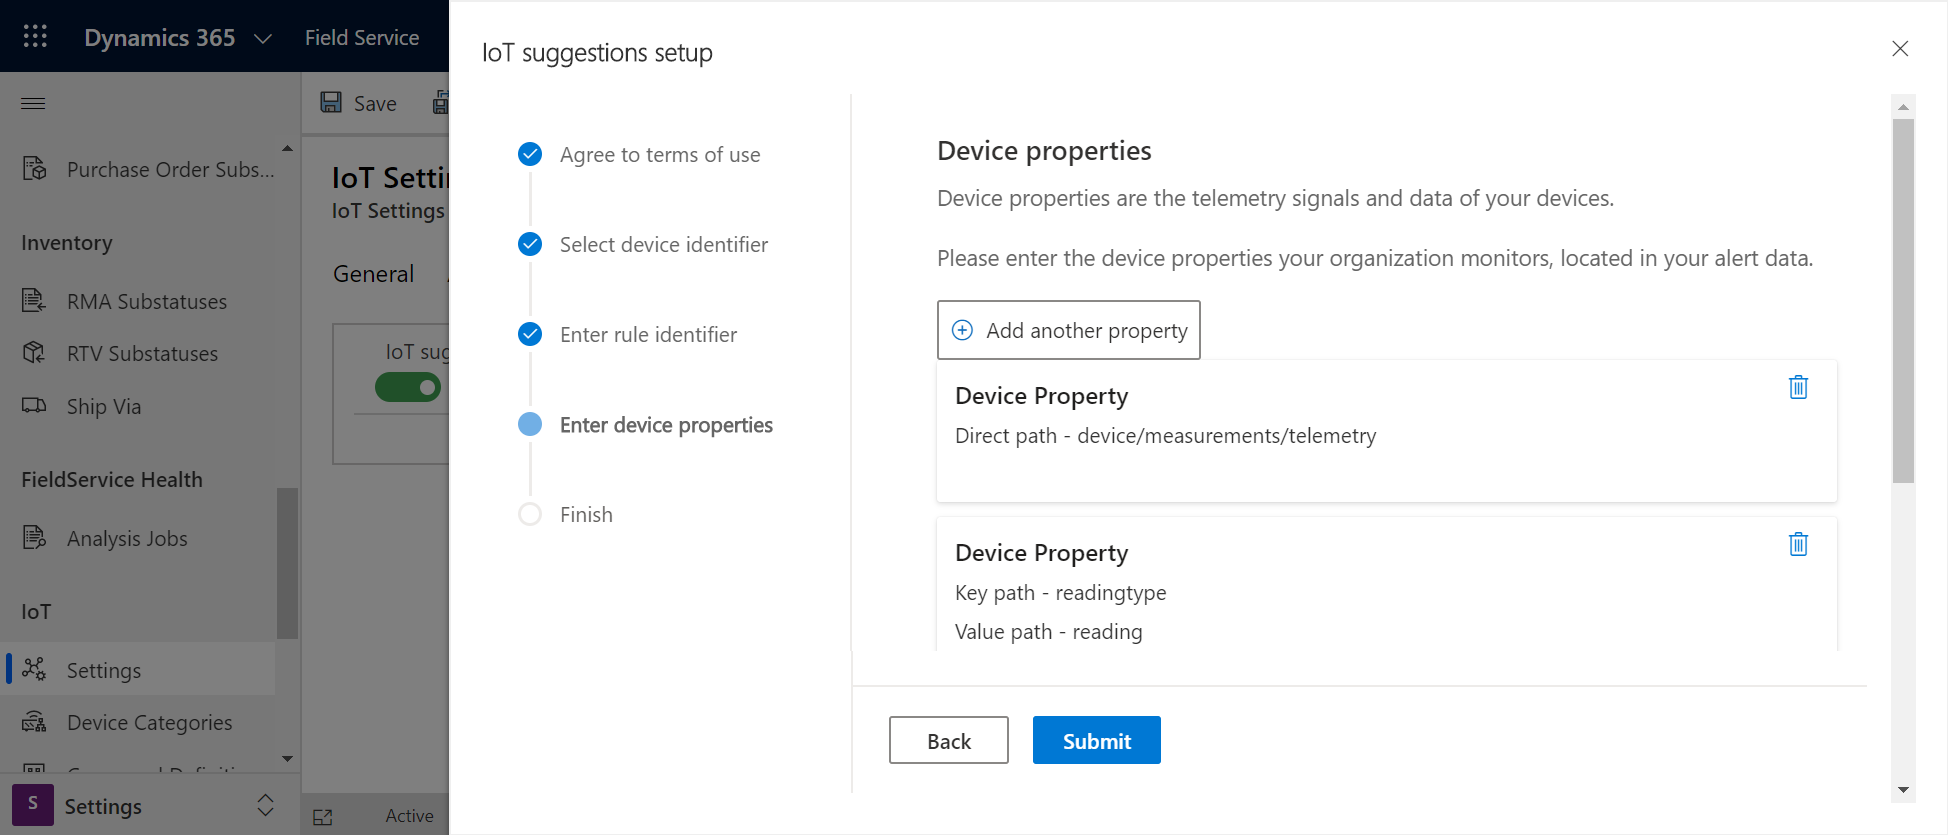 Captura de tela da tela de configuração das sugestões da IoT, mostrando a seção propriedades do dispositivo.